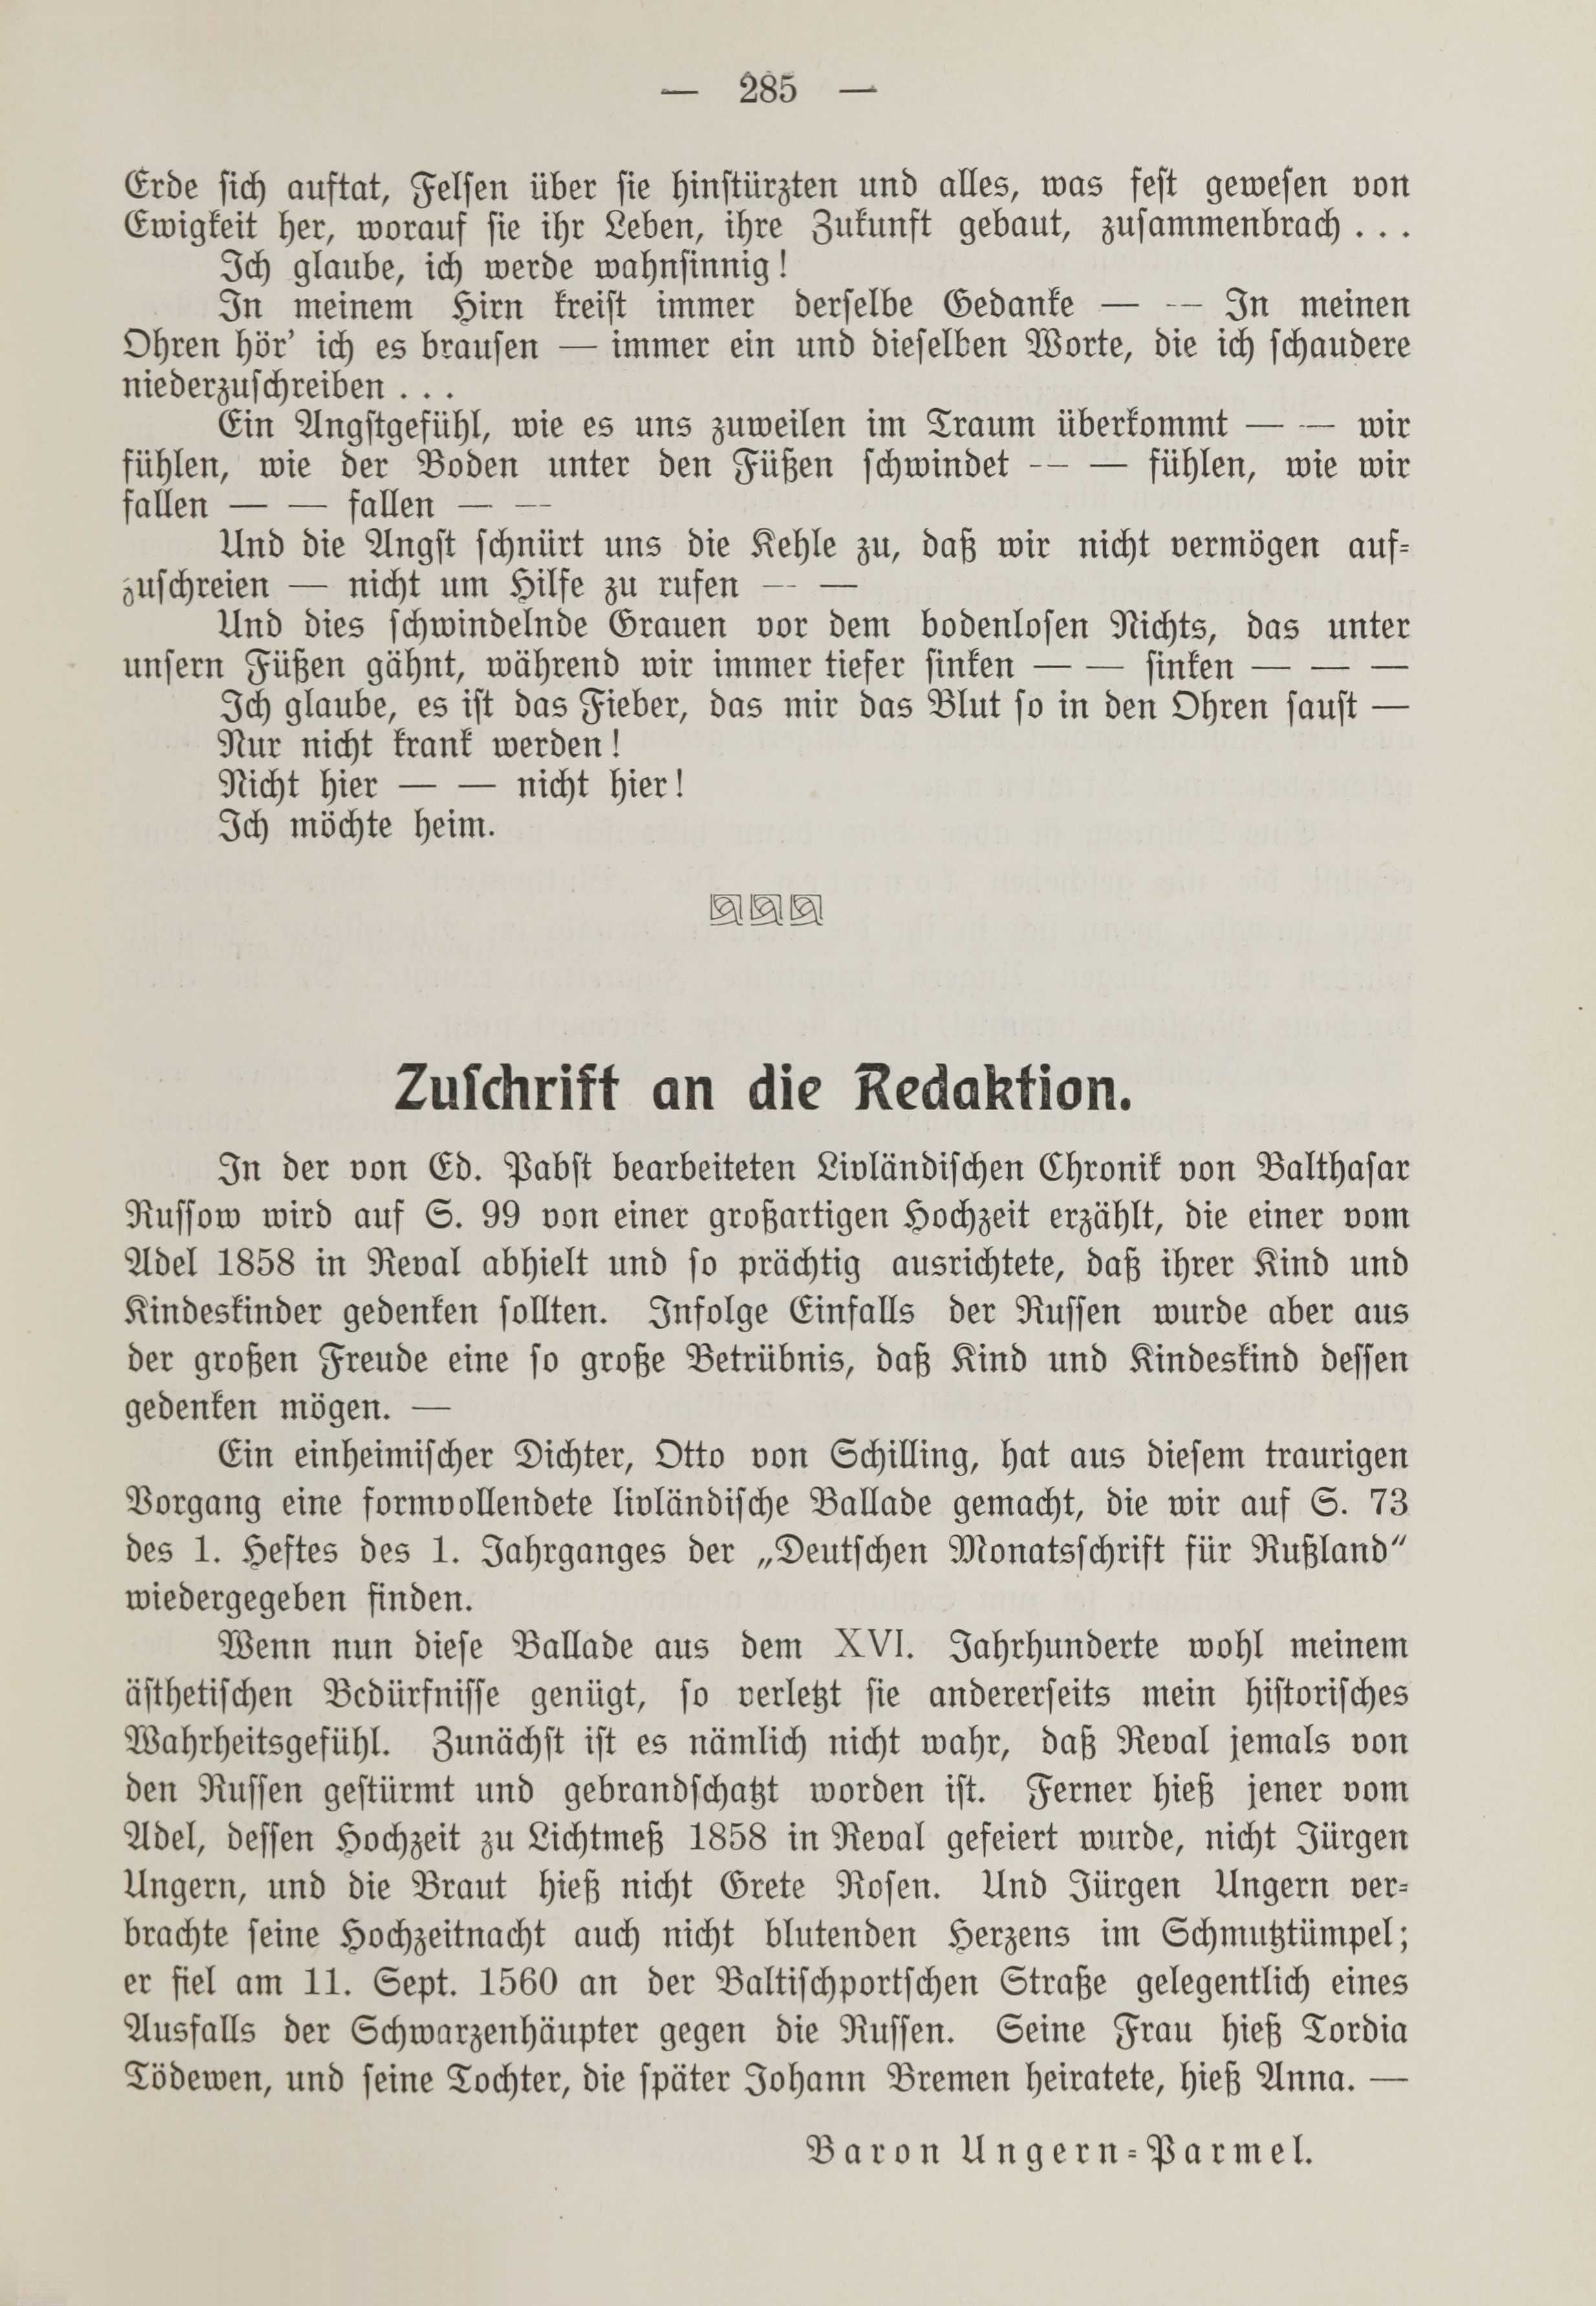 Deutsche Monatsschrift für Russland [1] (1912) | 293. (285) Põhitekst